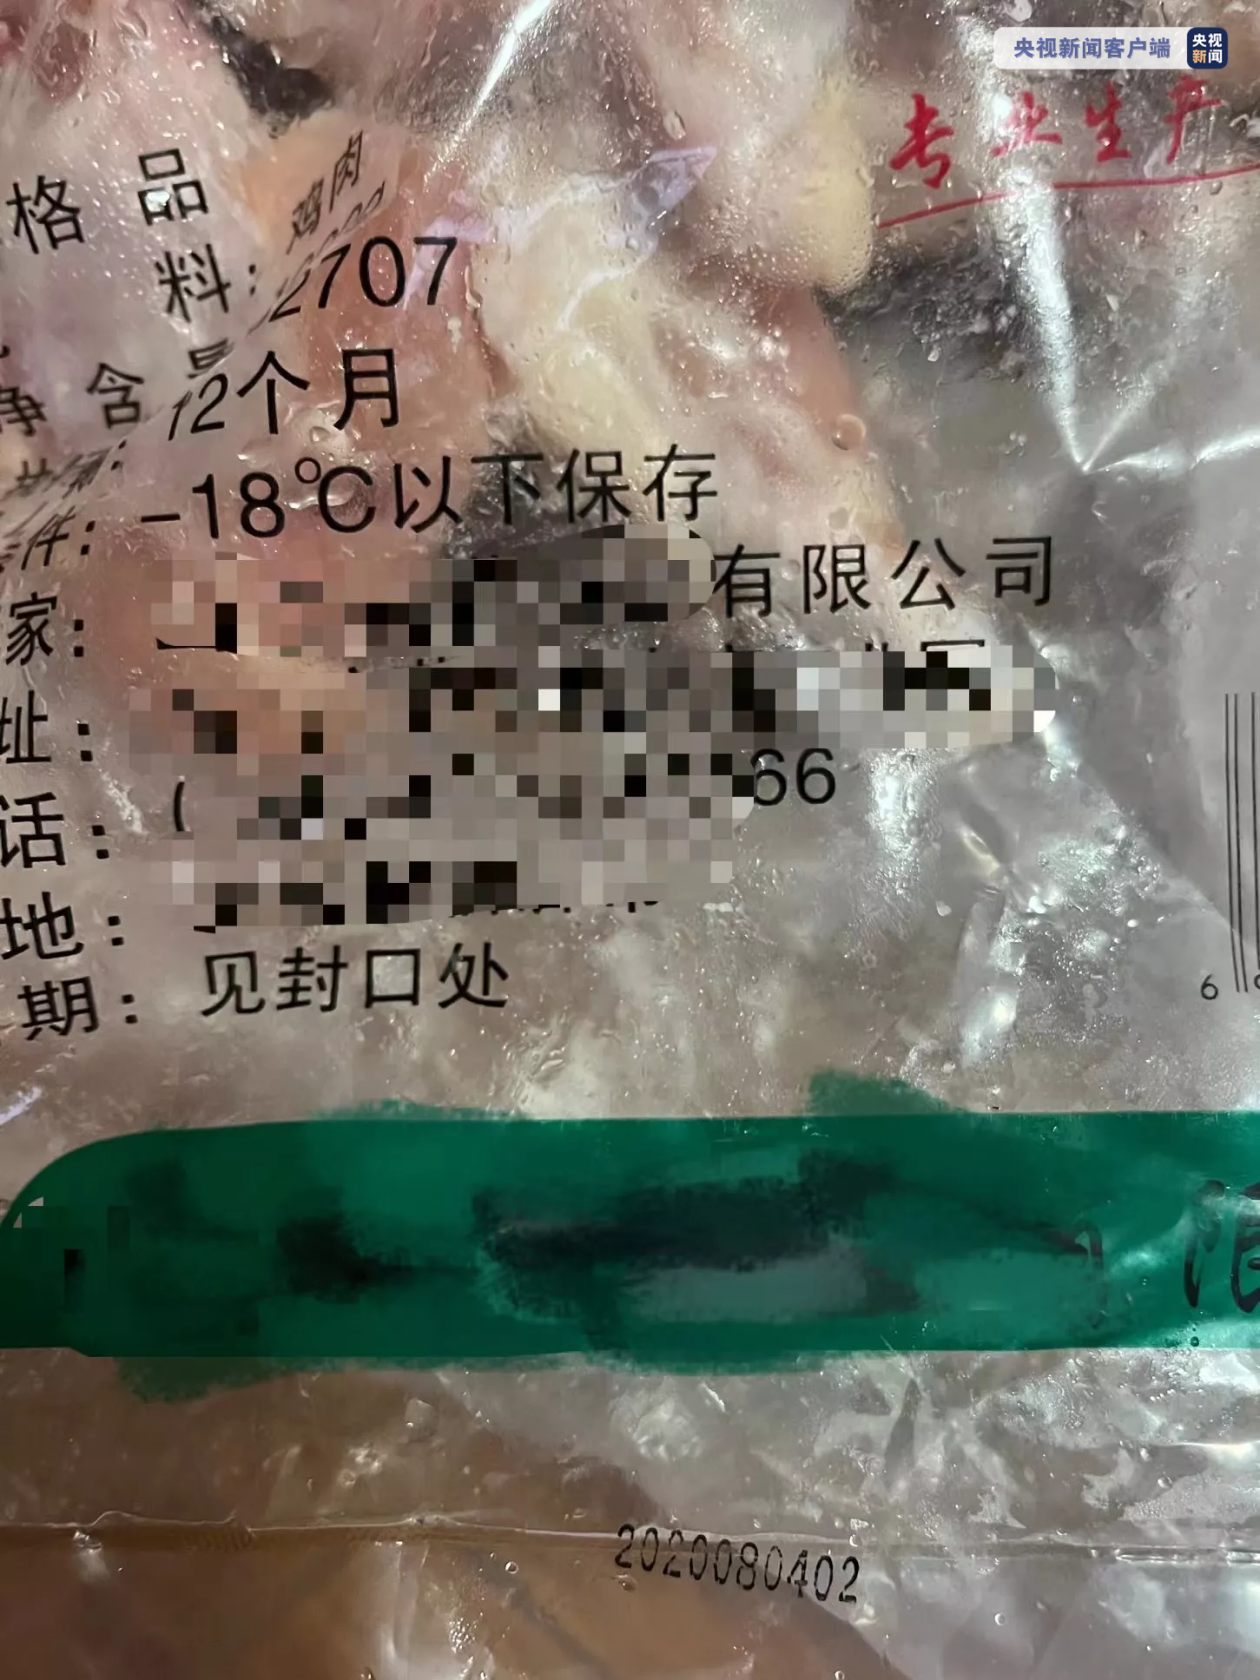 上海一公司销售过期冷冻鸡翅被查